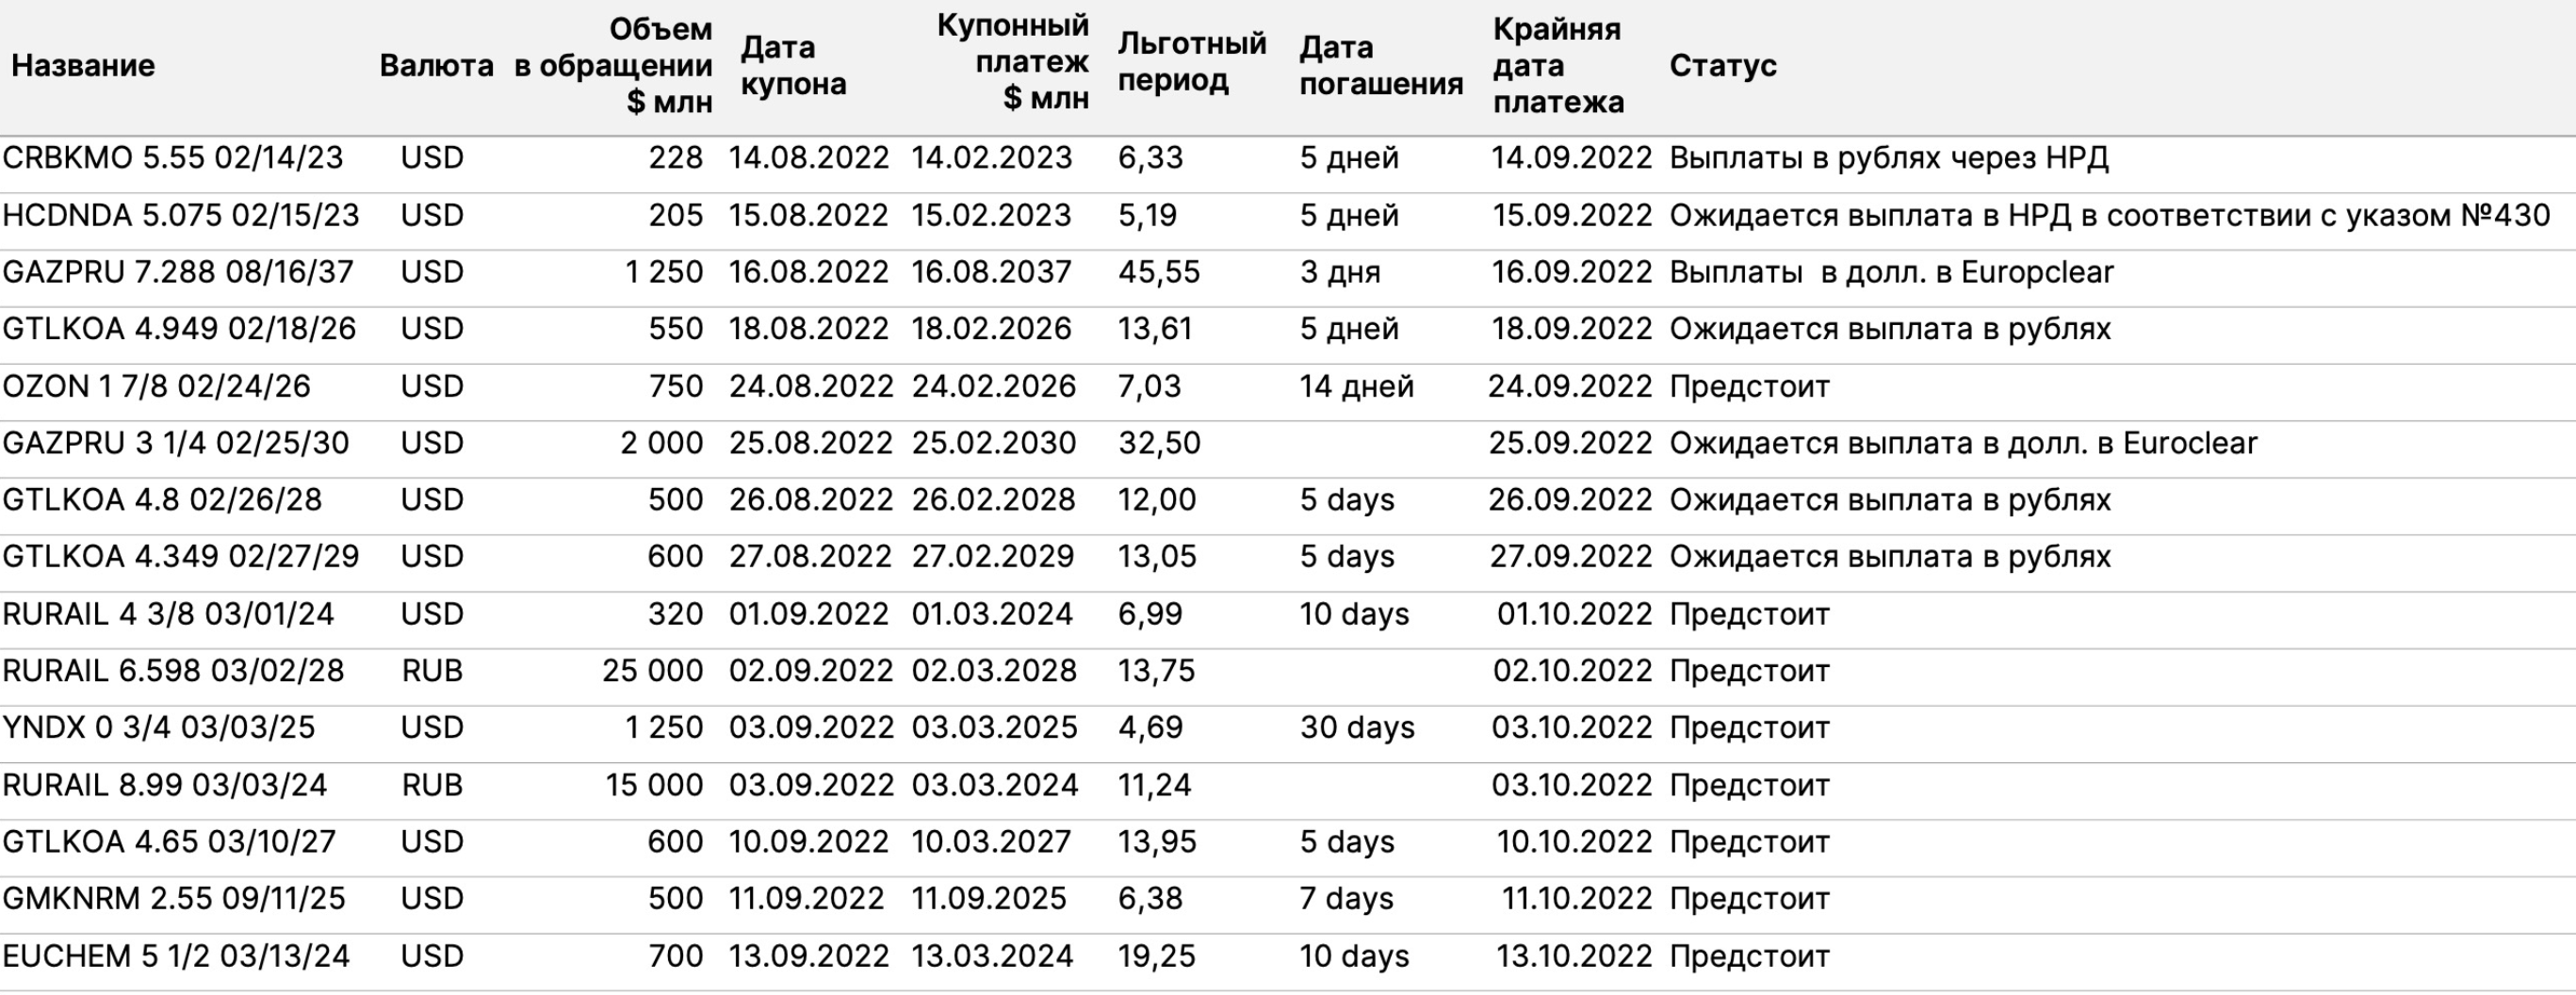 Таблица недавних и предстоящих выплат по российским еврооблигациям